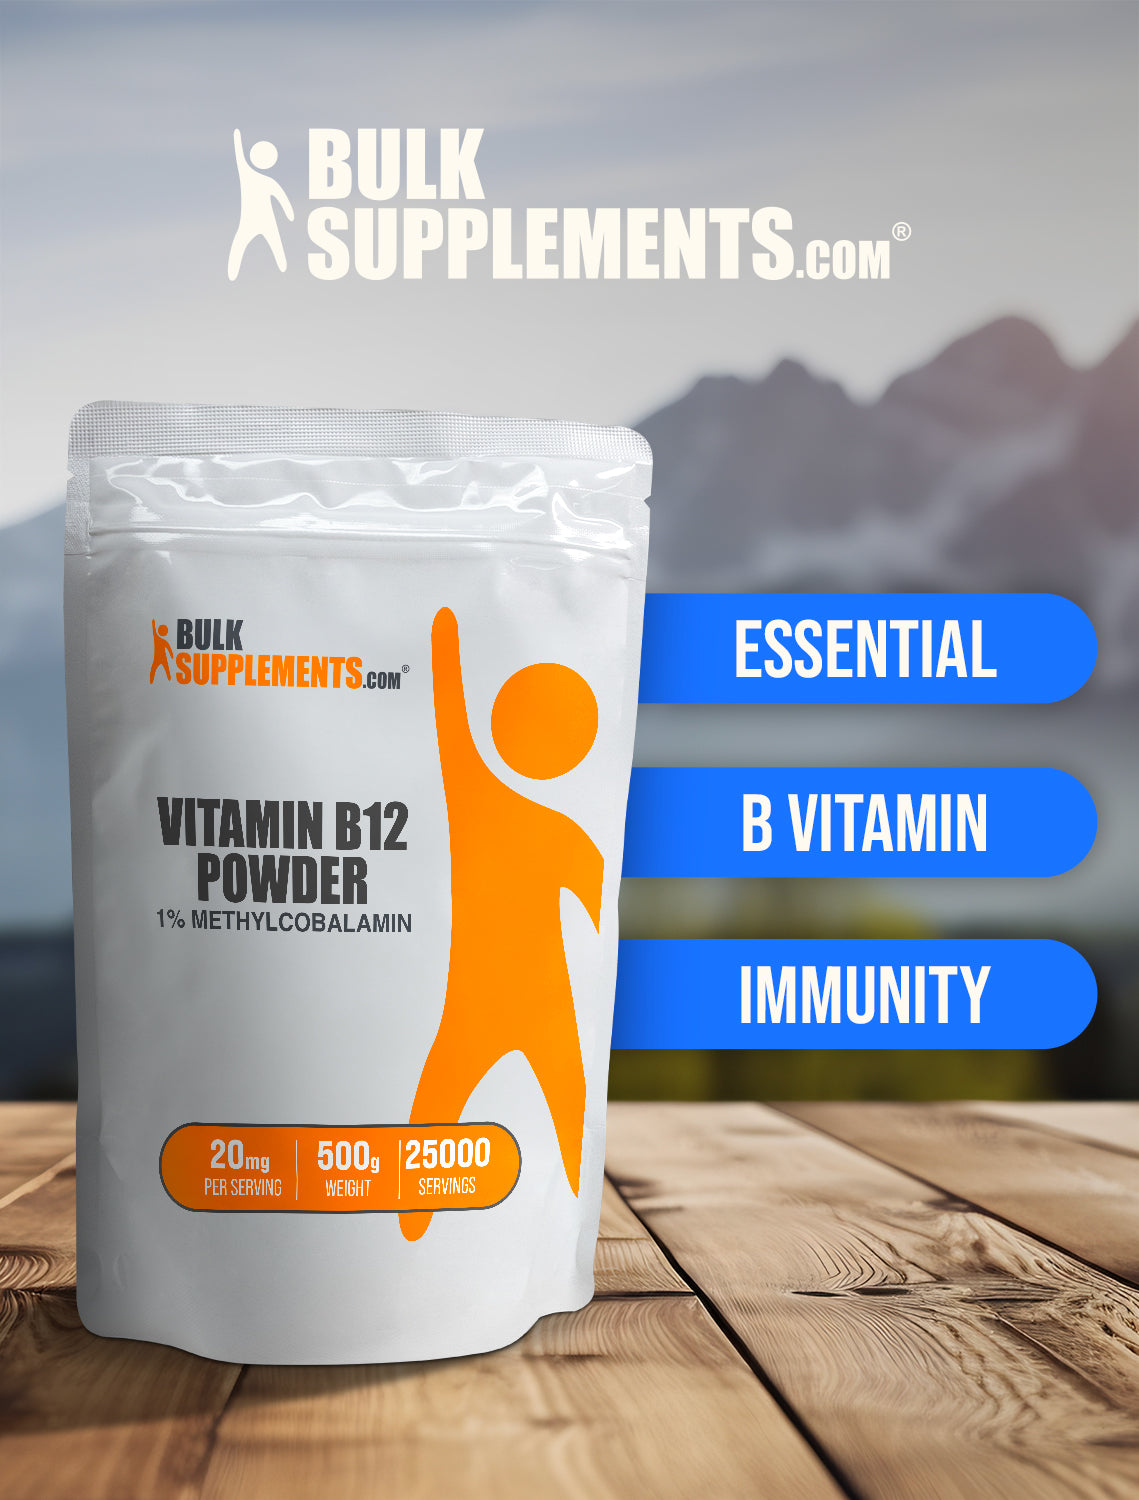 Vitamin B12 1% Methylcobalamin powder keyword image 500g